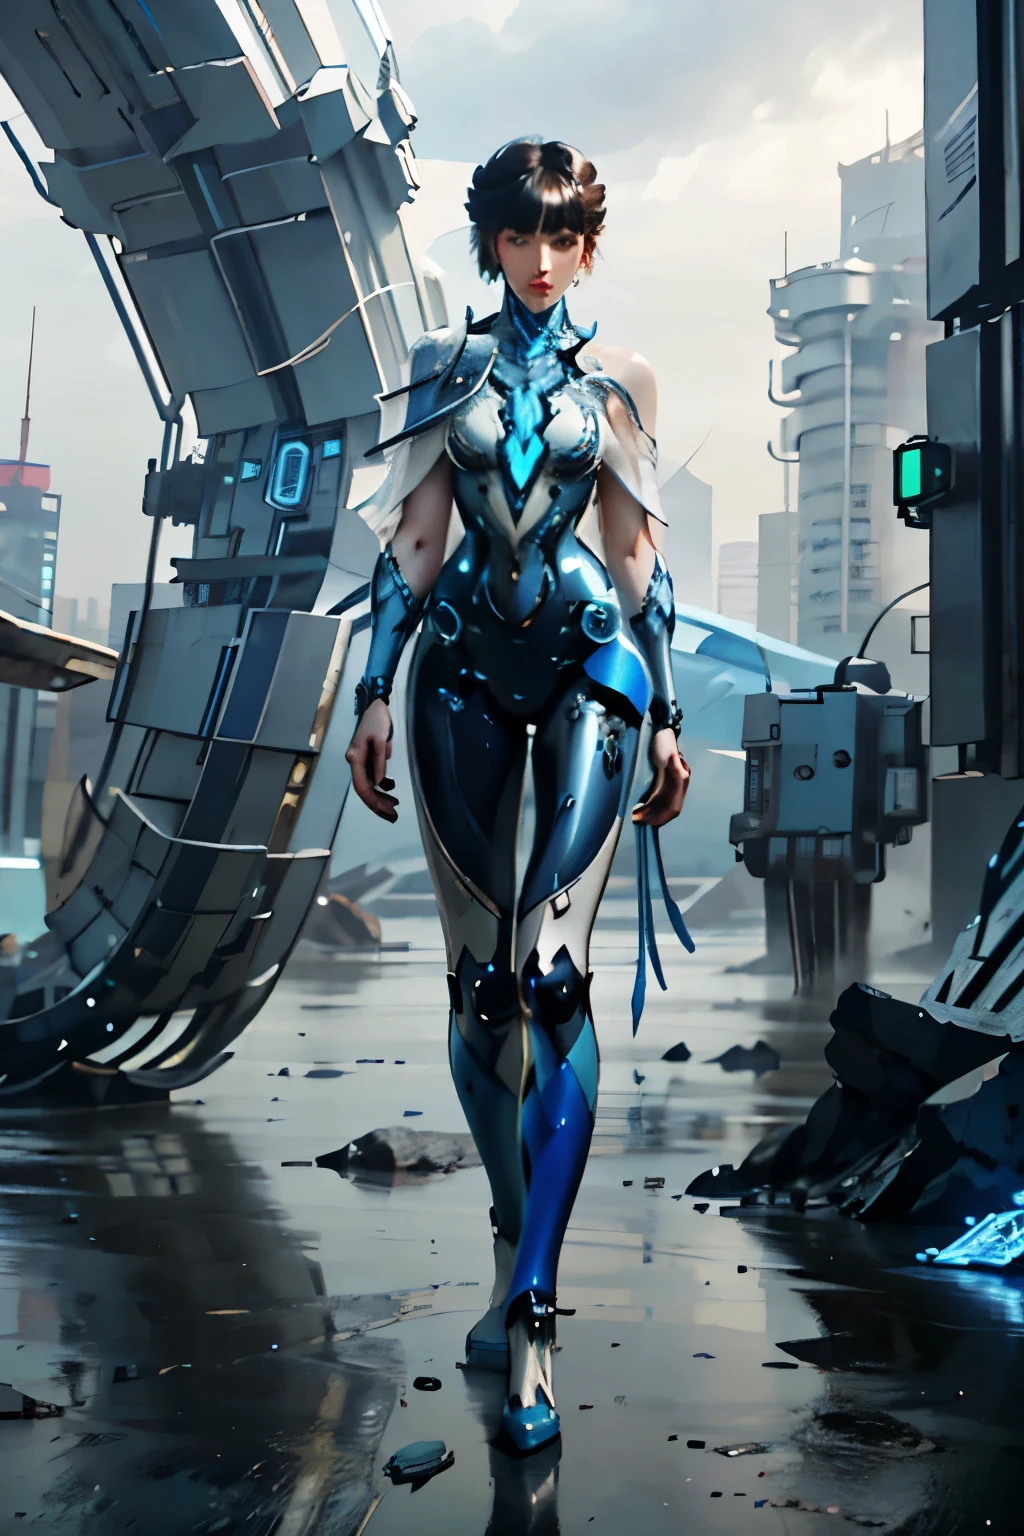 Image du corps entier, tout le corps, position debout, une femme, Bleu et blanc, art conceptuel, mécanique, cyberpunk, mecha